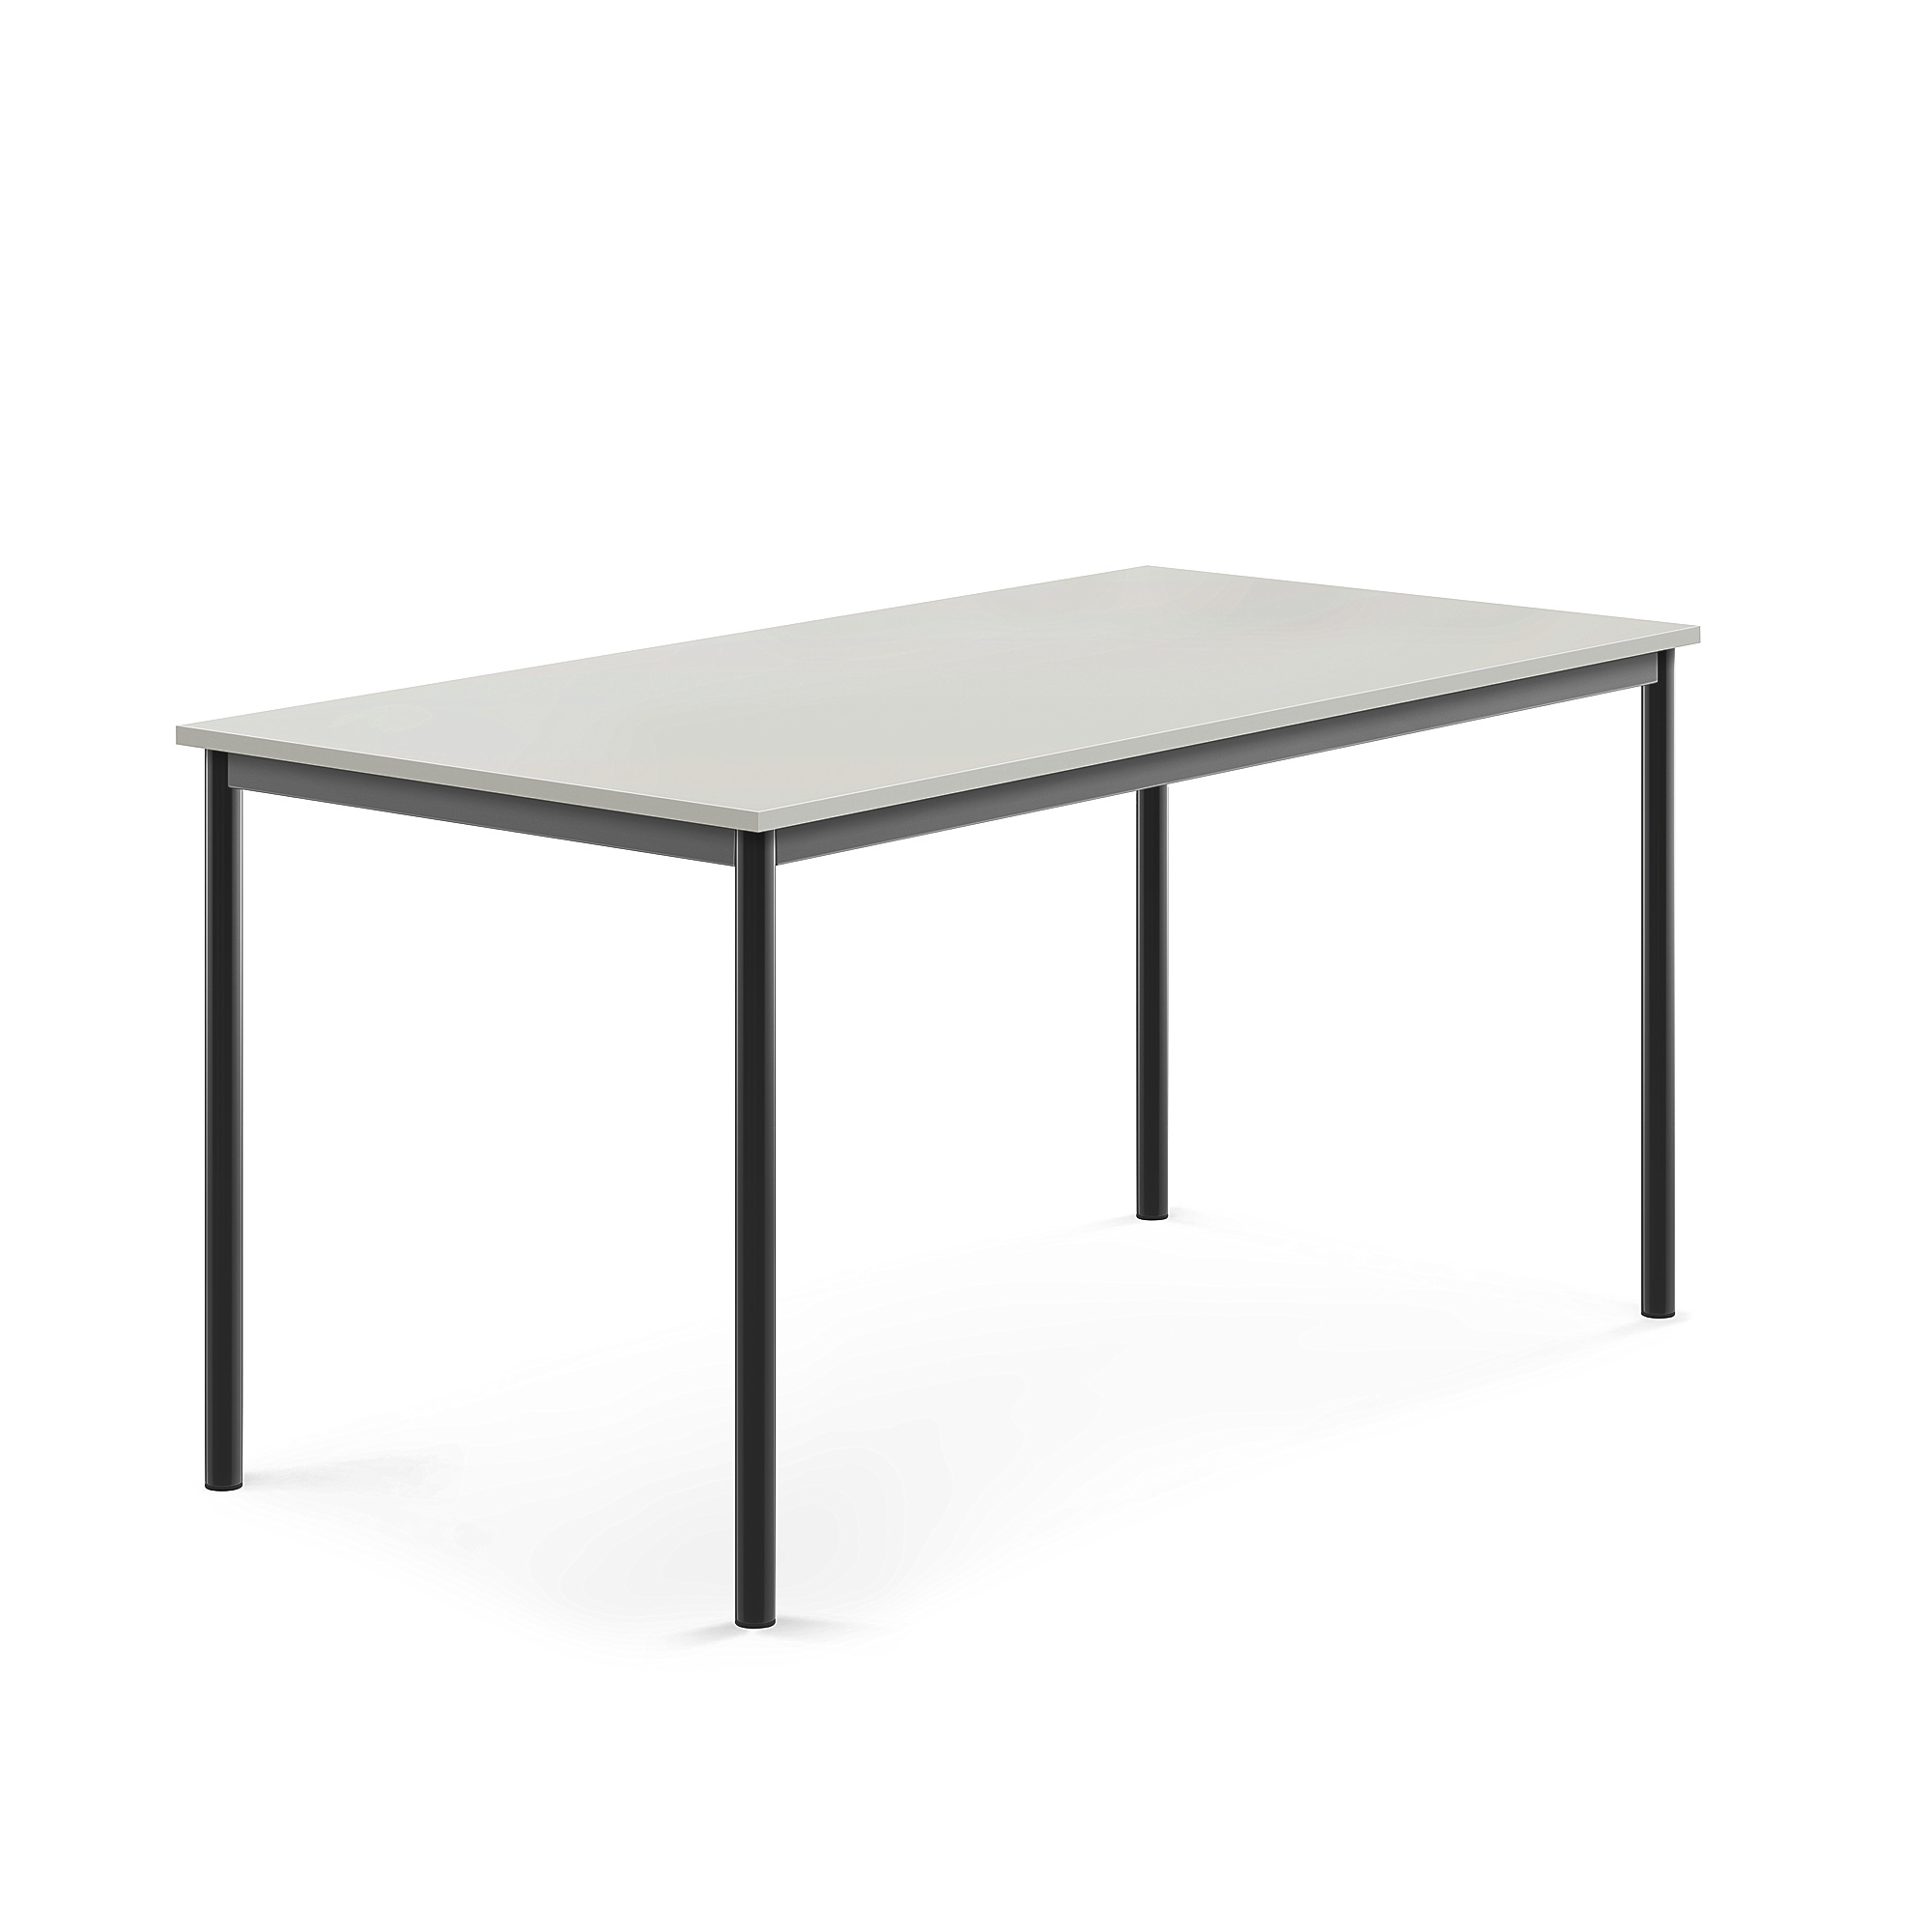 Stůl BORÅS, 1600x800x760 mm, antracitově šedé nohy, HPL deska, šedá